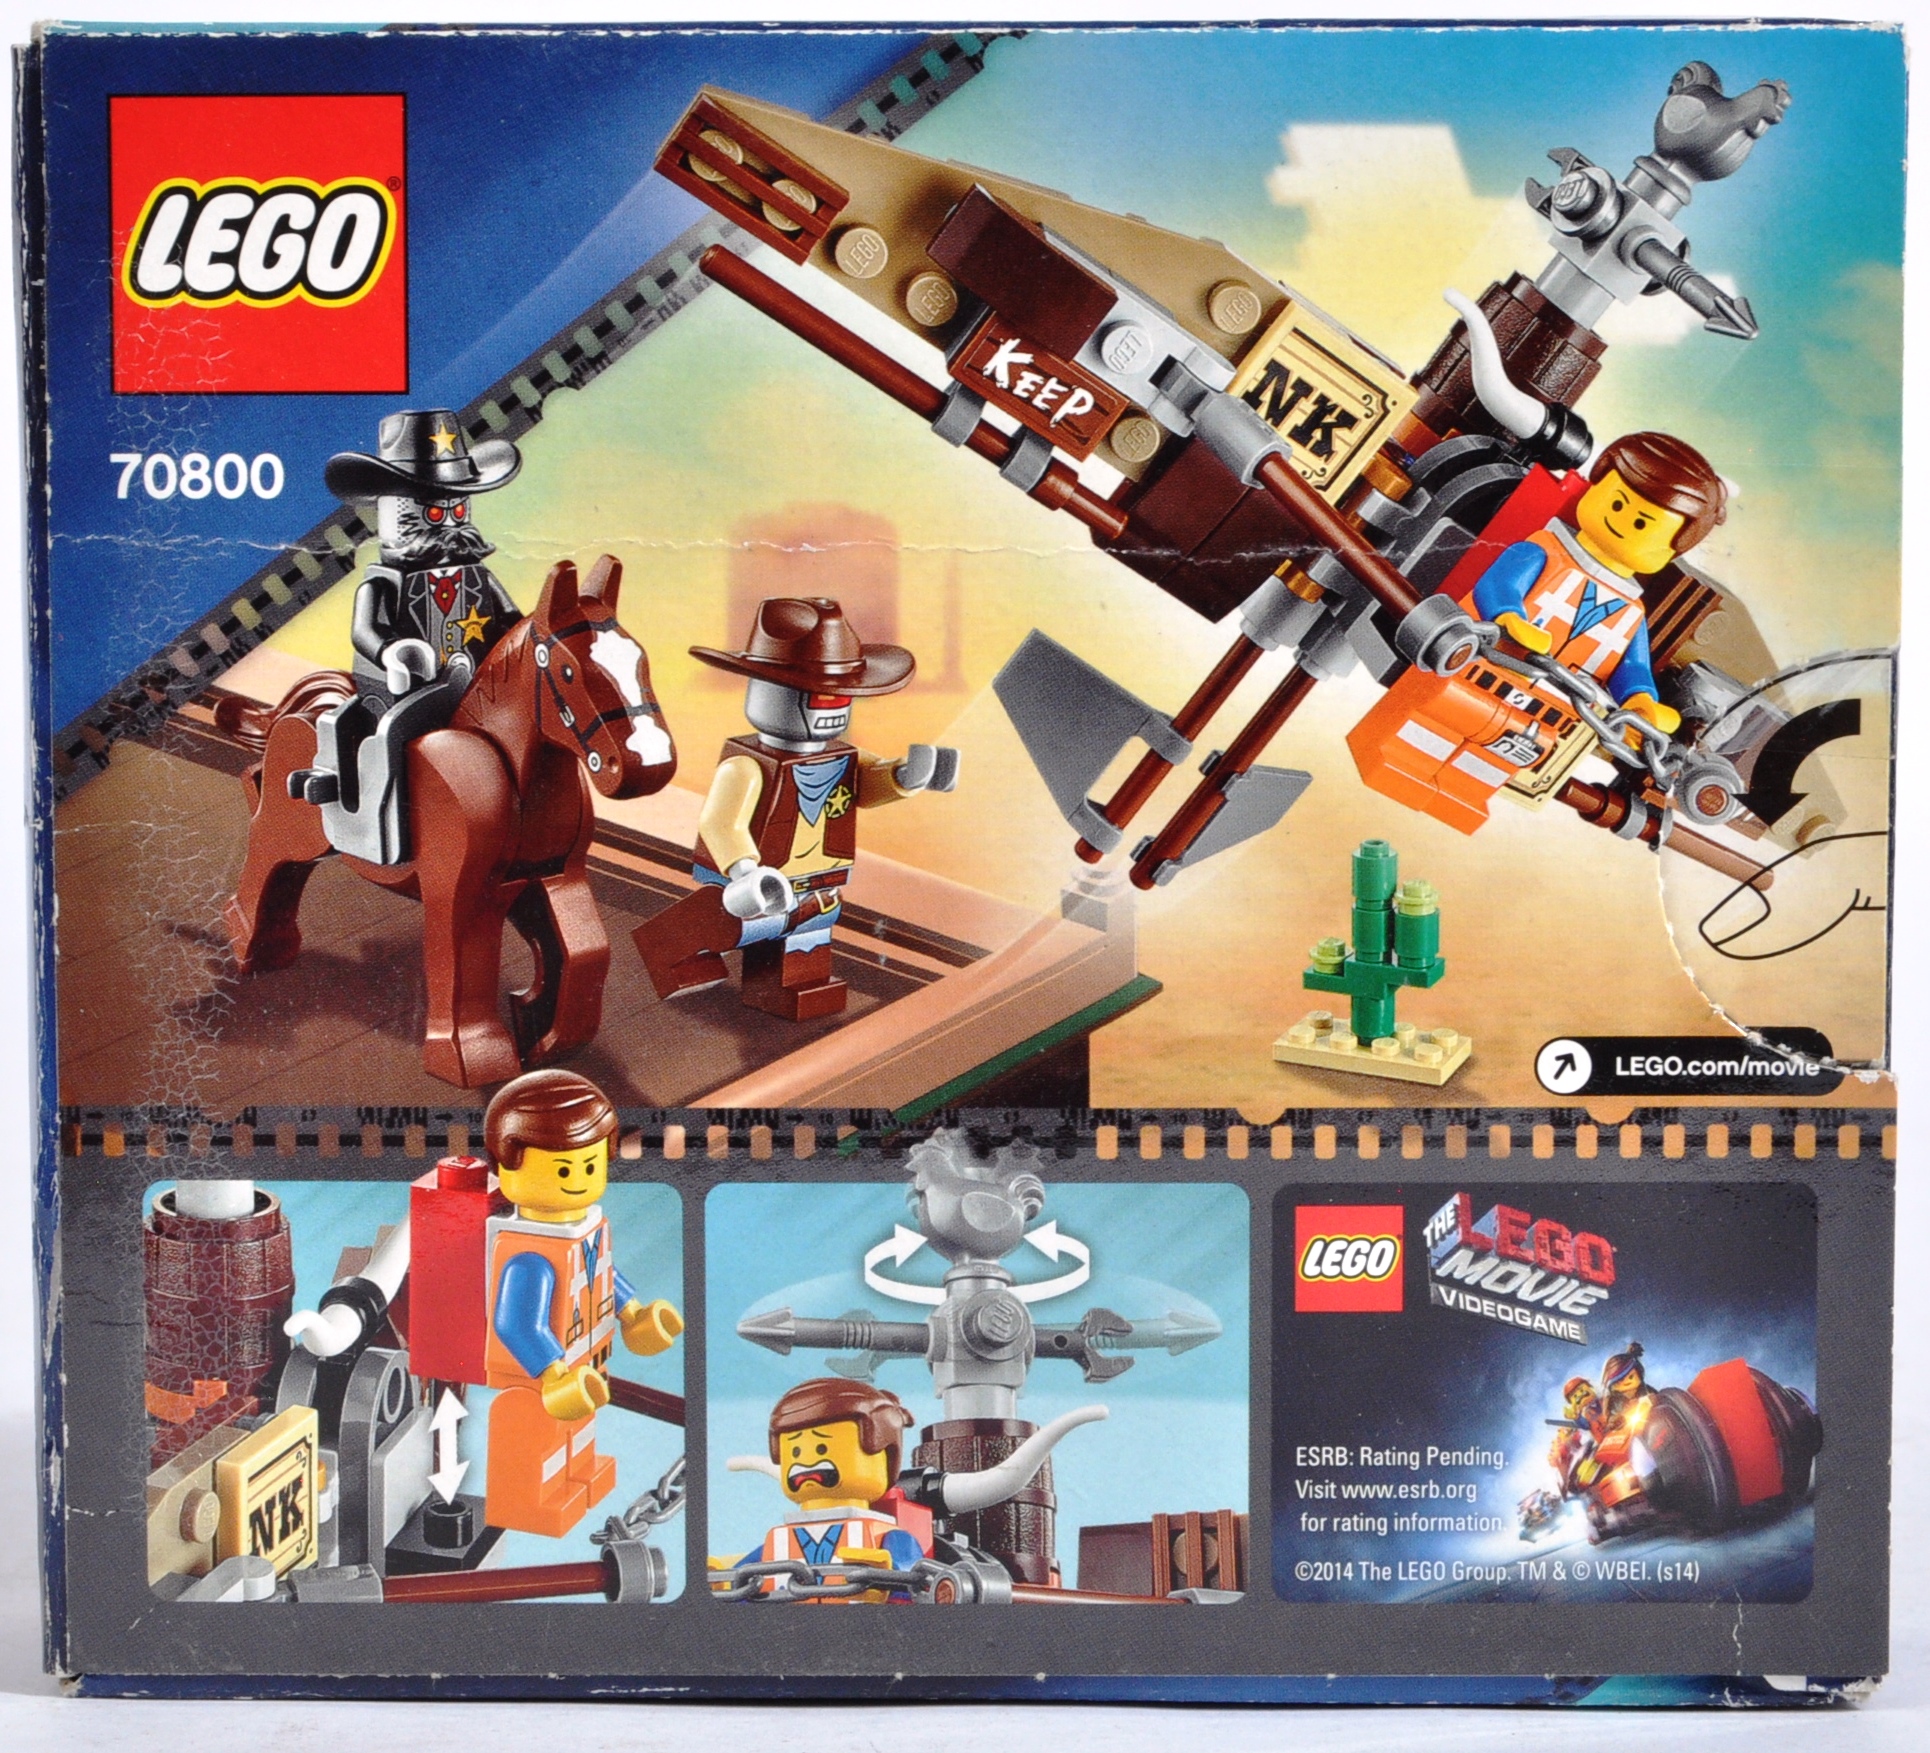 LEGO SETS - LEGO MOVIE AND LEGO STUDIOS - Image 10 of 13